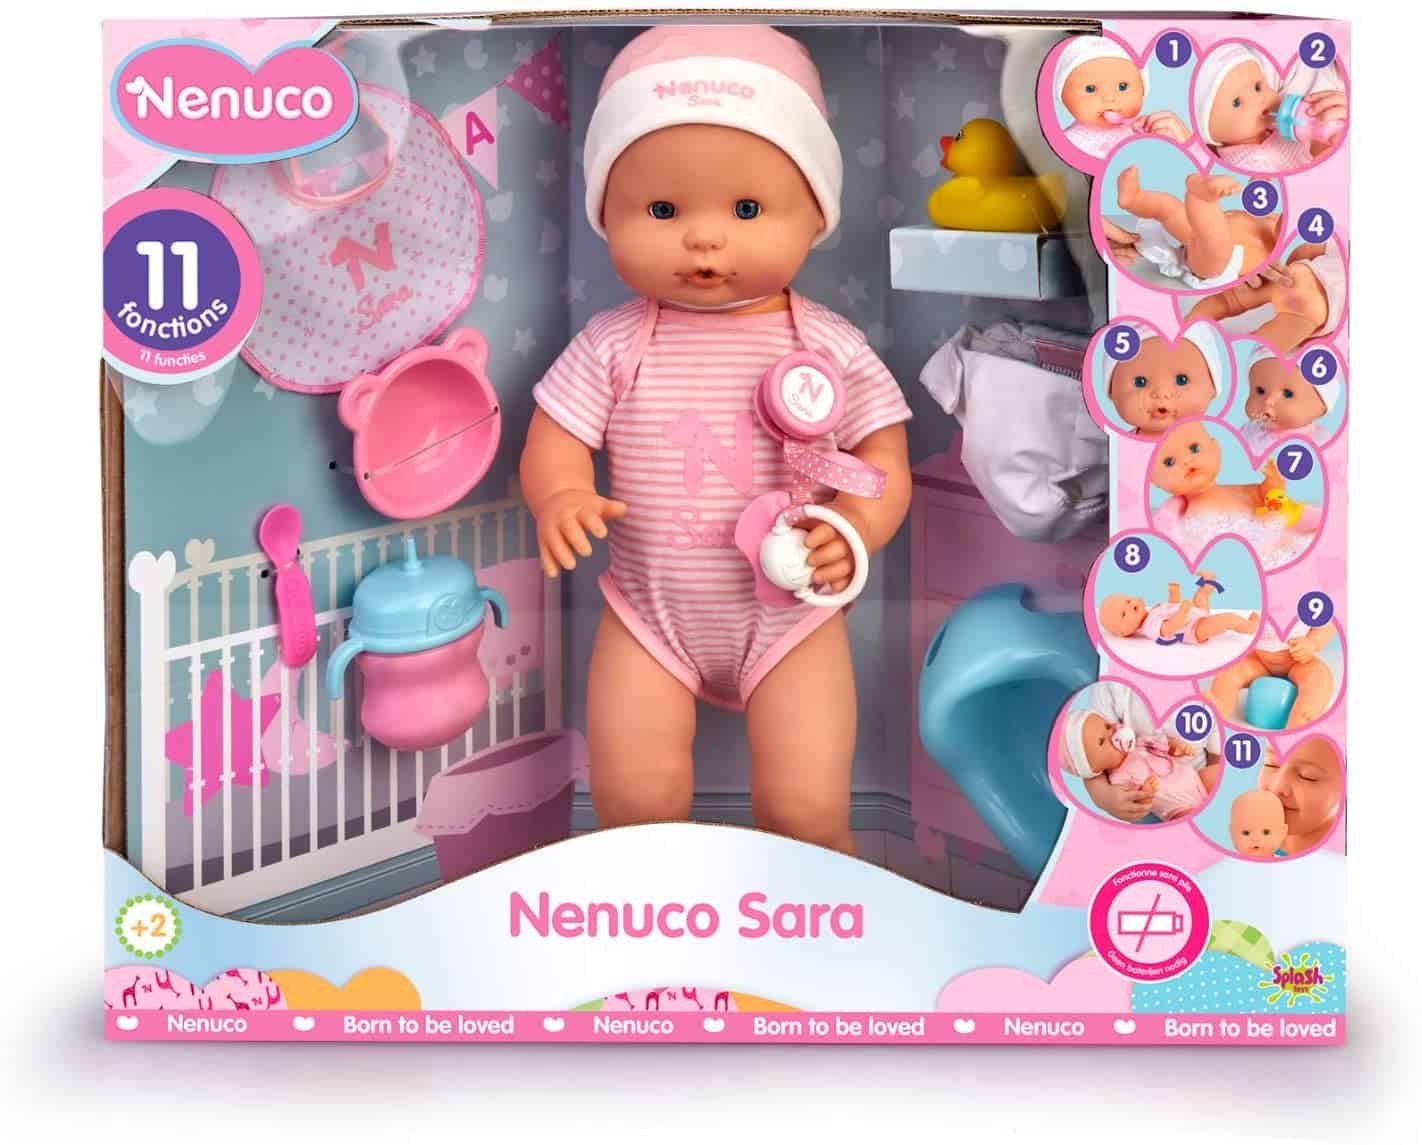 Mejor muñeca con cuerpo blando: Doll Nenuco soft